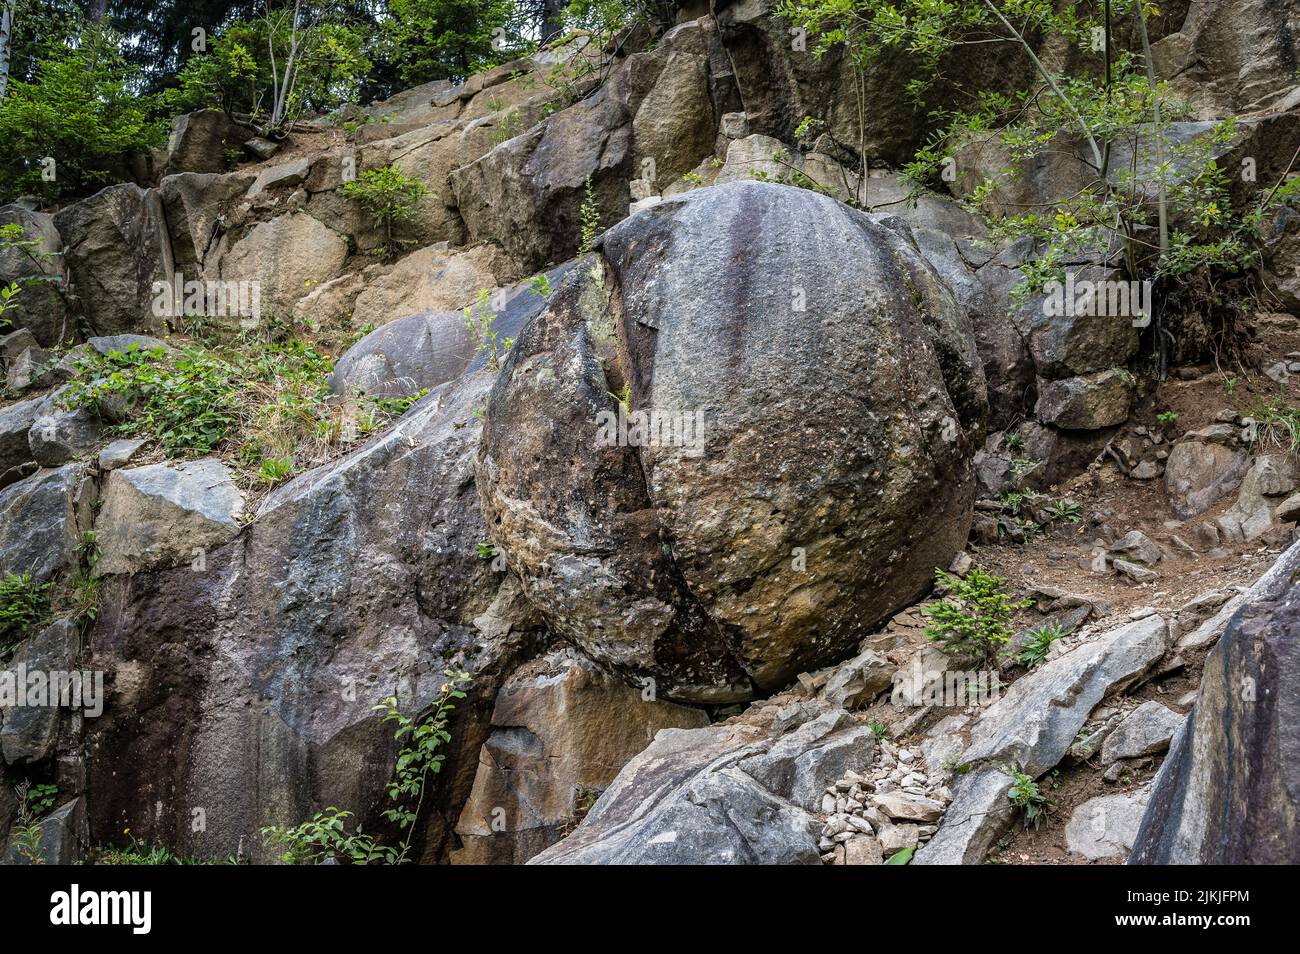 Una grande sfera di pietra su una collina rocciosa Foto Stock